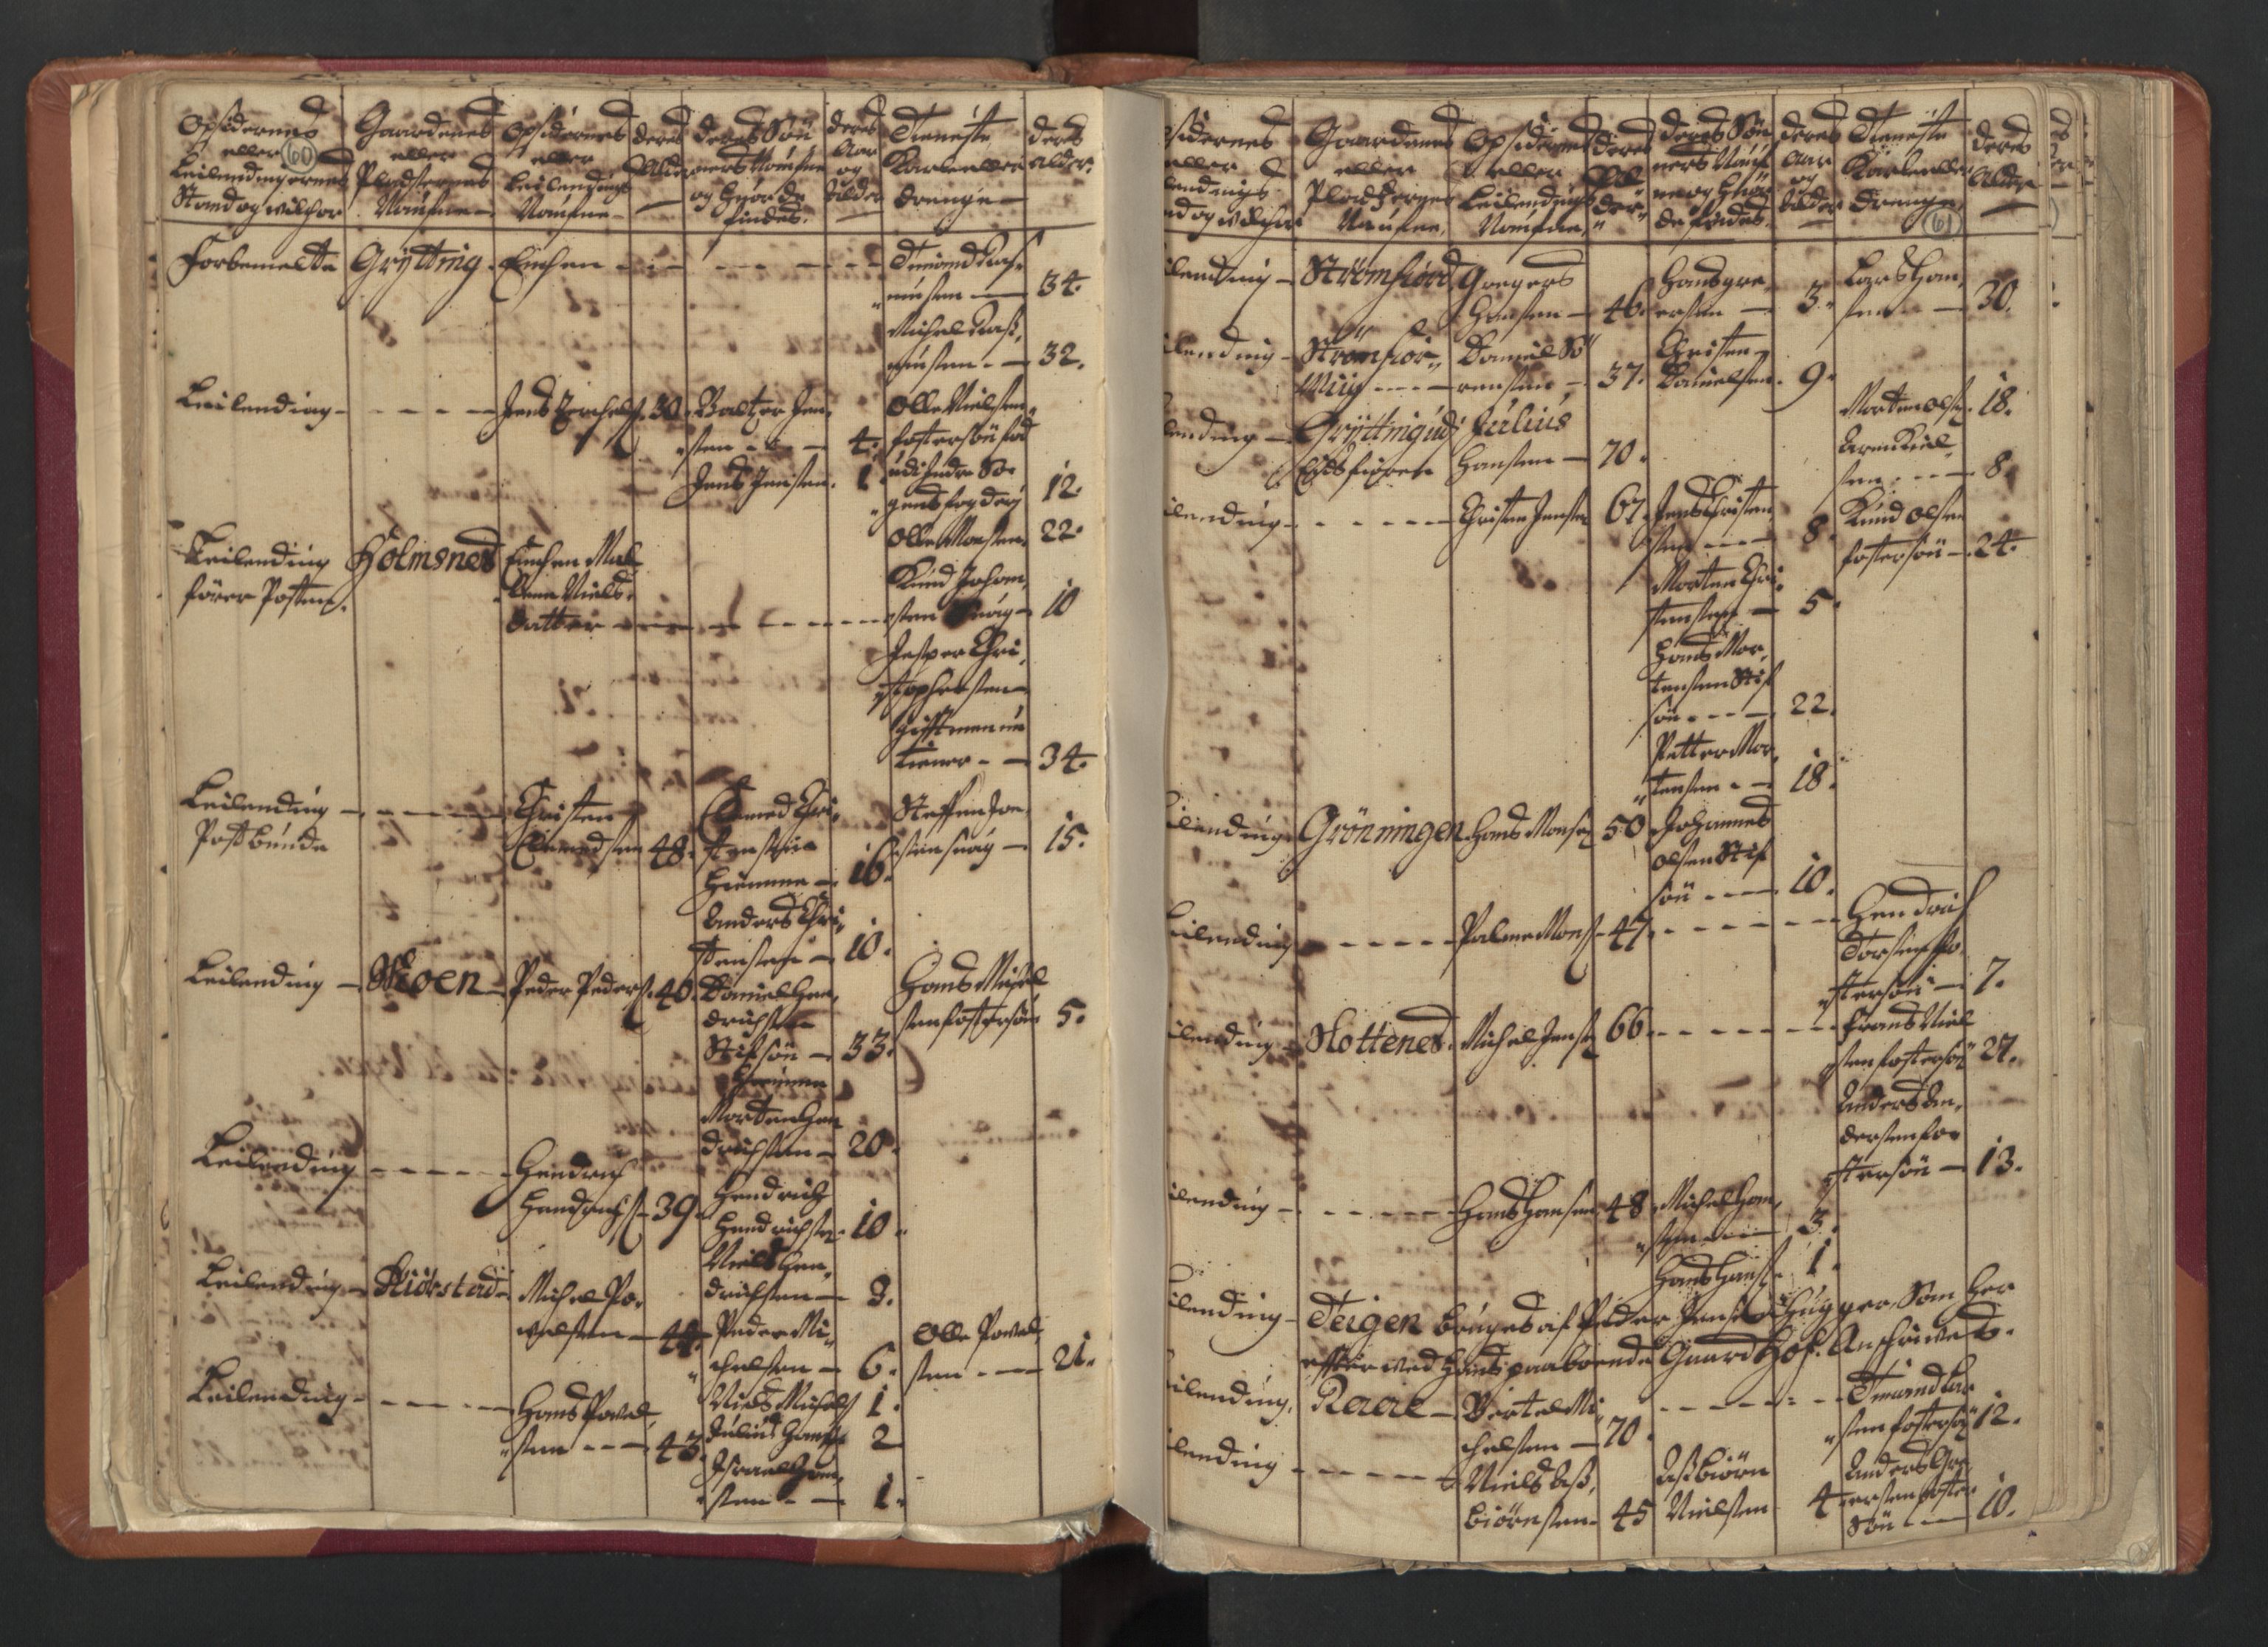 RA, Census (manntall) 1701, no. 18: Vesterålen, Andenes and Lofoten fogderi, 1701, p. 60-61